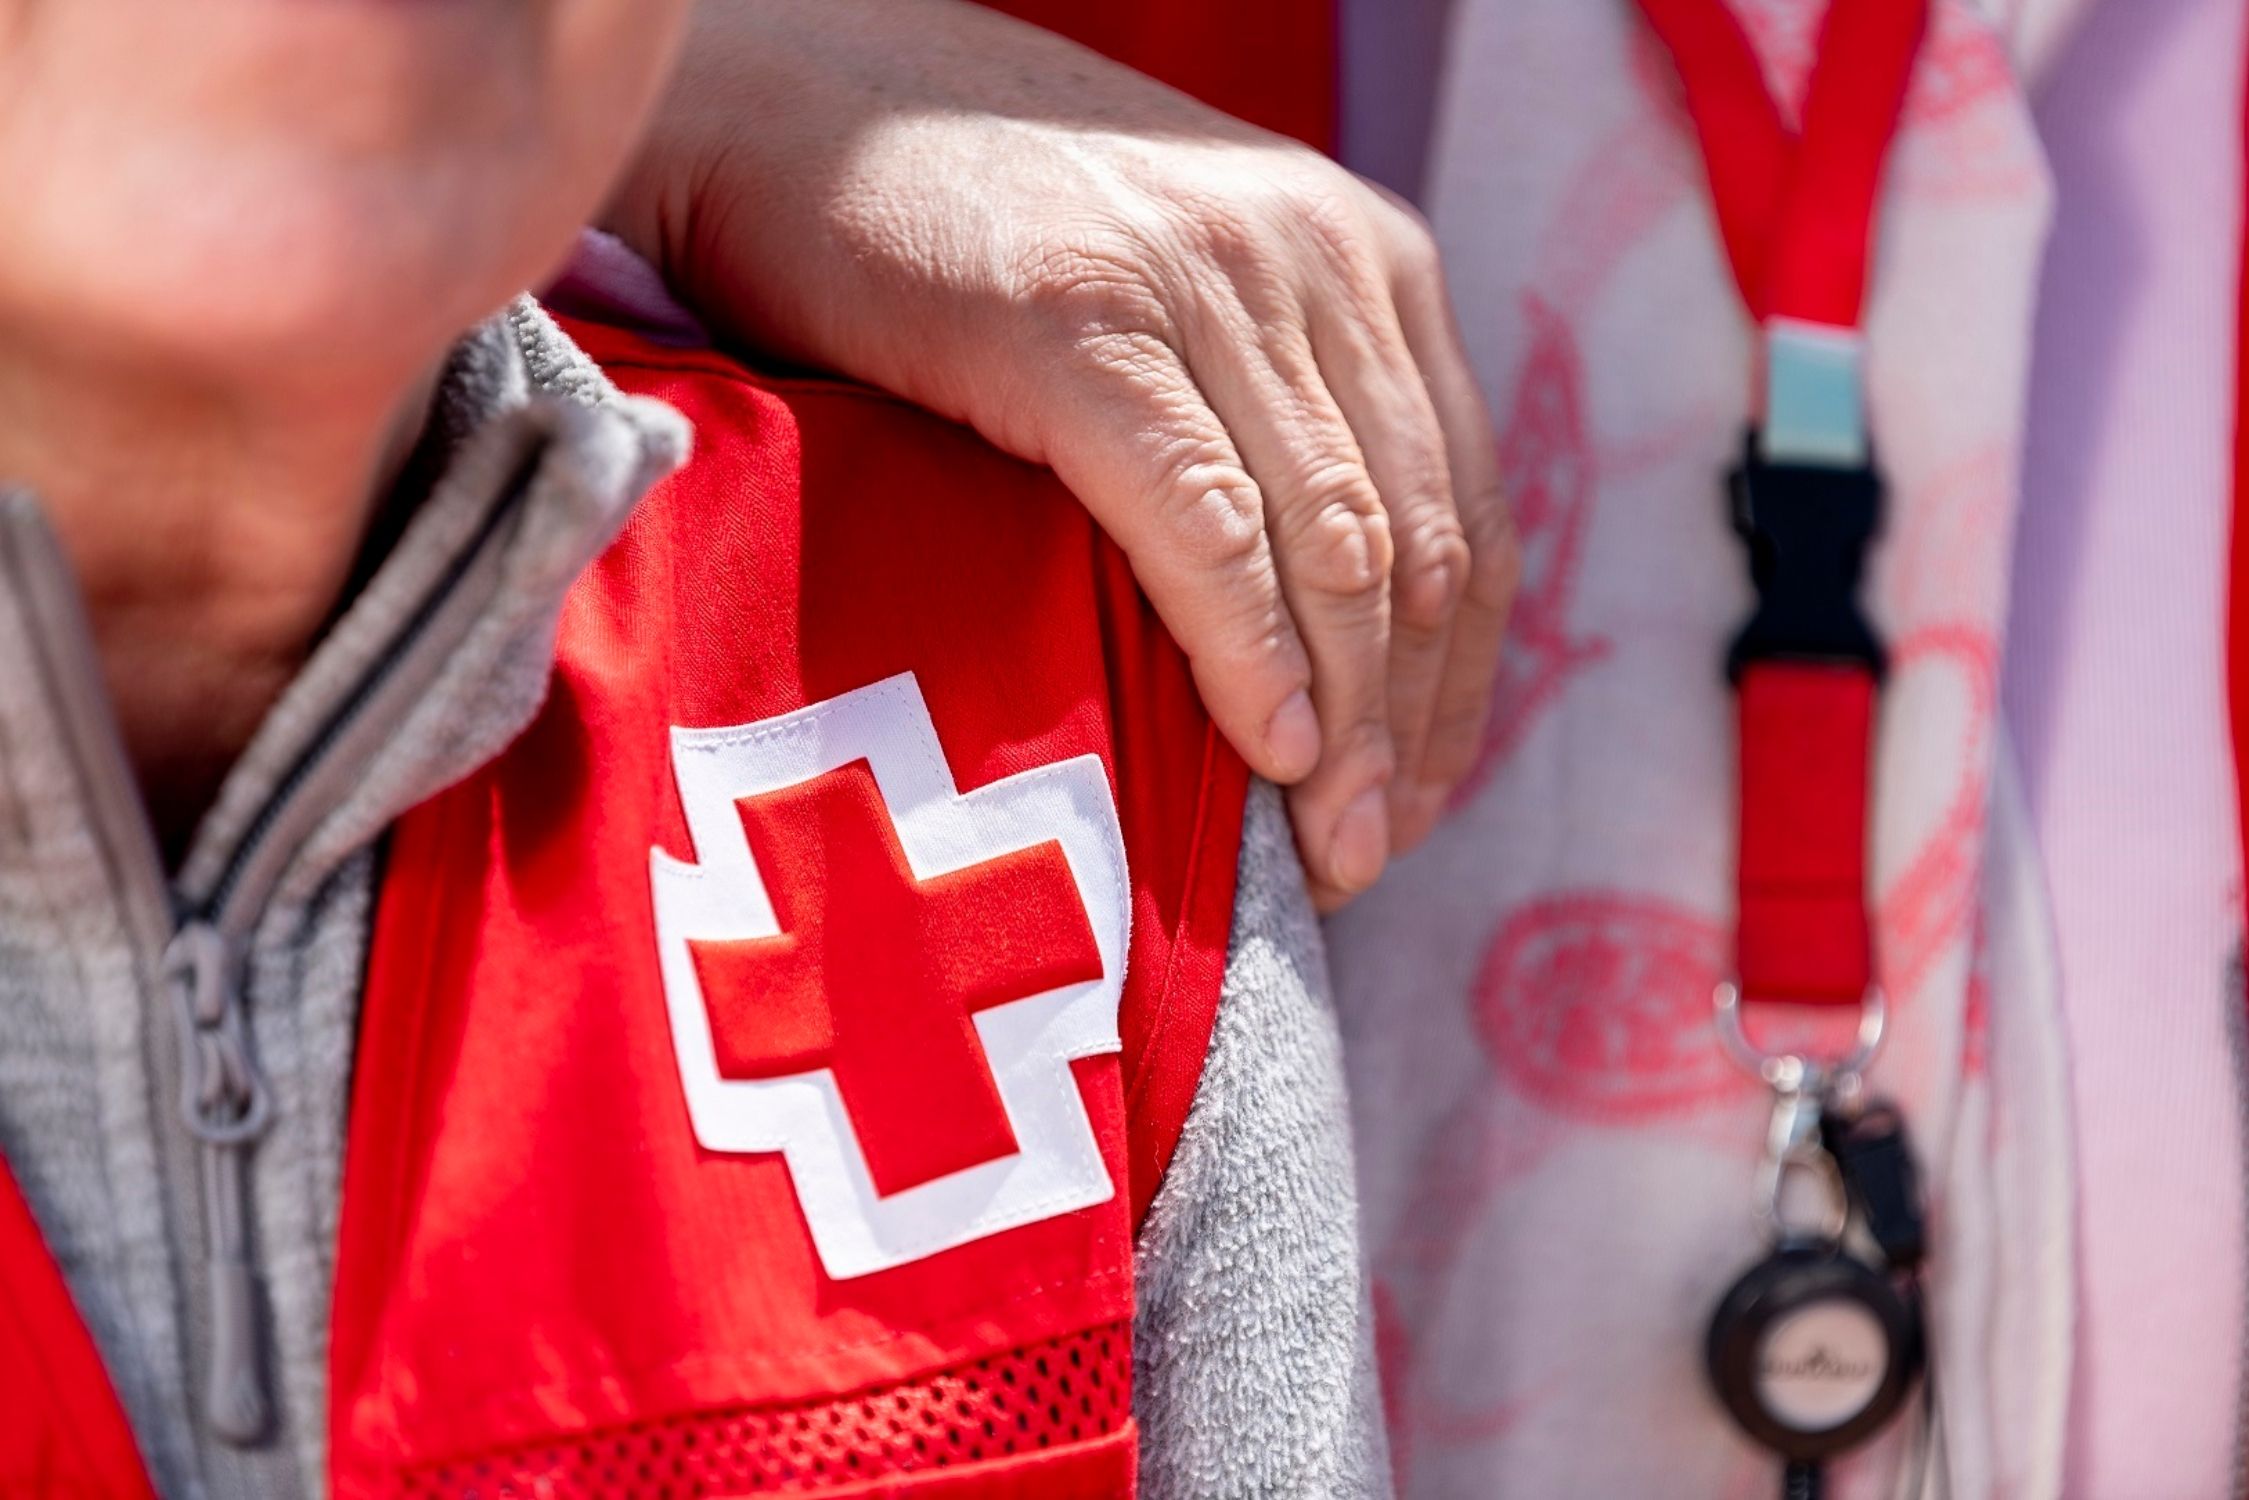 El programa contra la soledad no deseada de Cruz Roja atiende más de 8.000 consultas su primer año. Foto: Europa Press